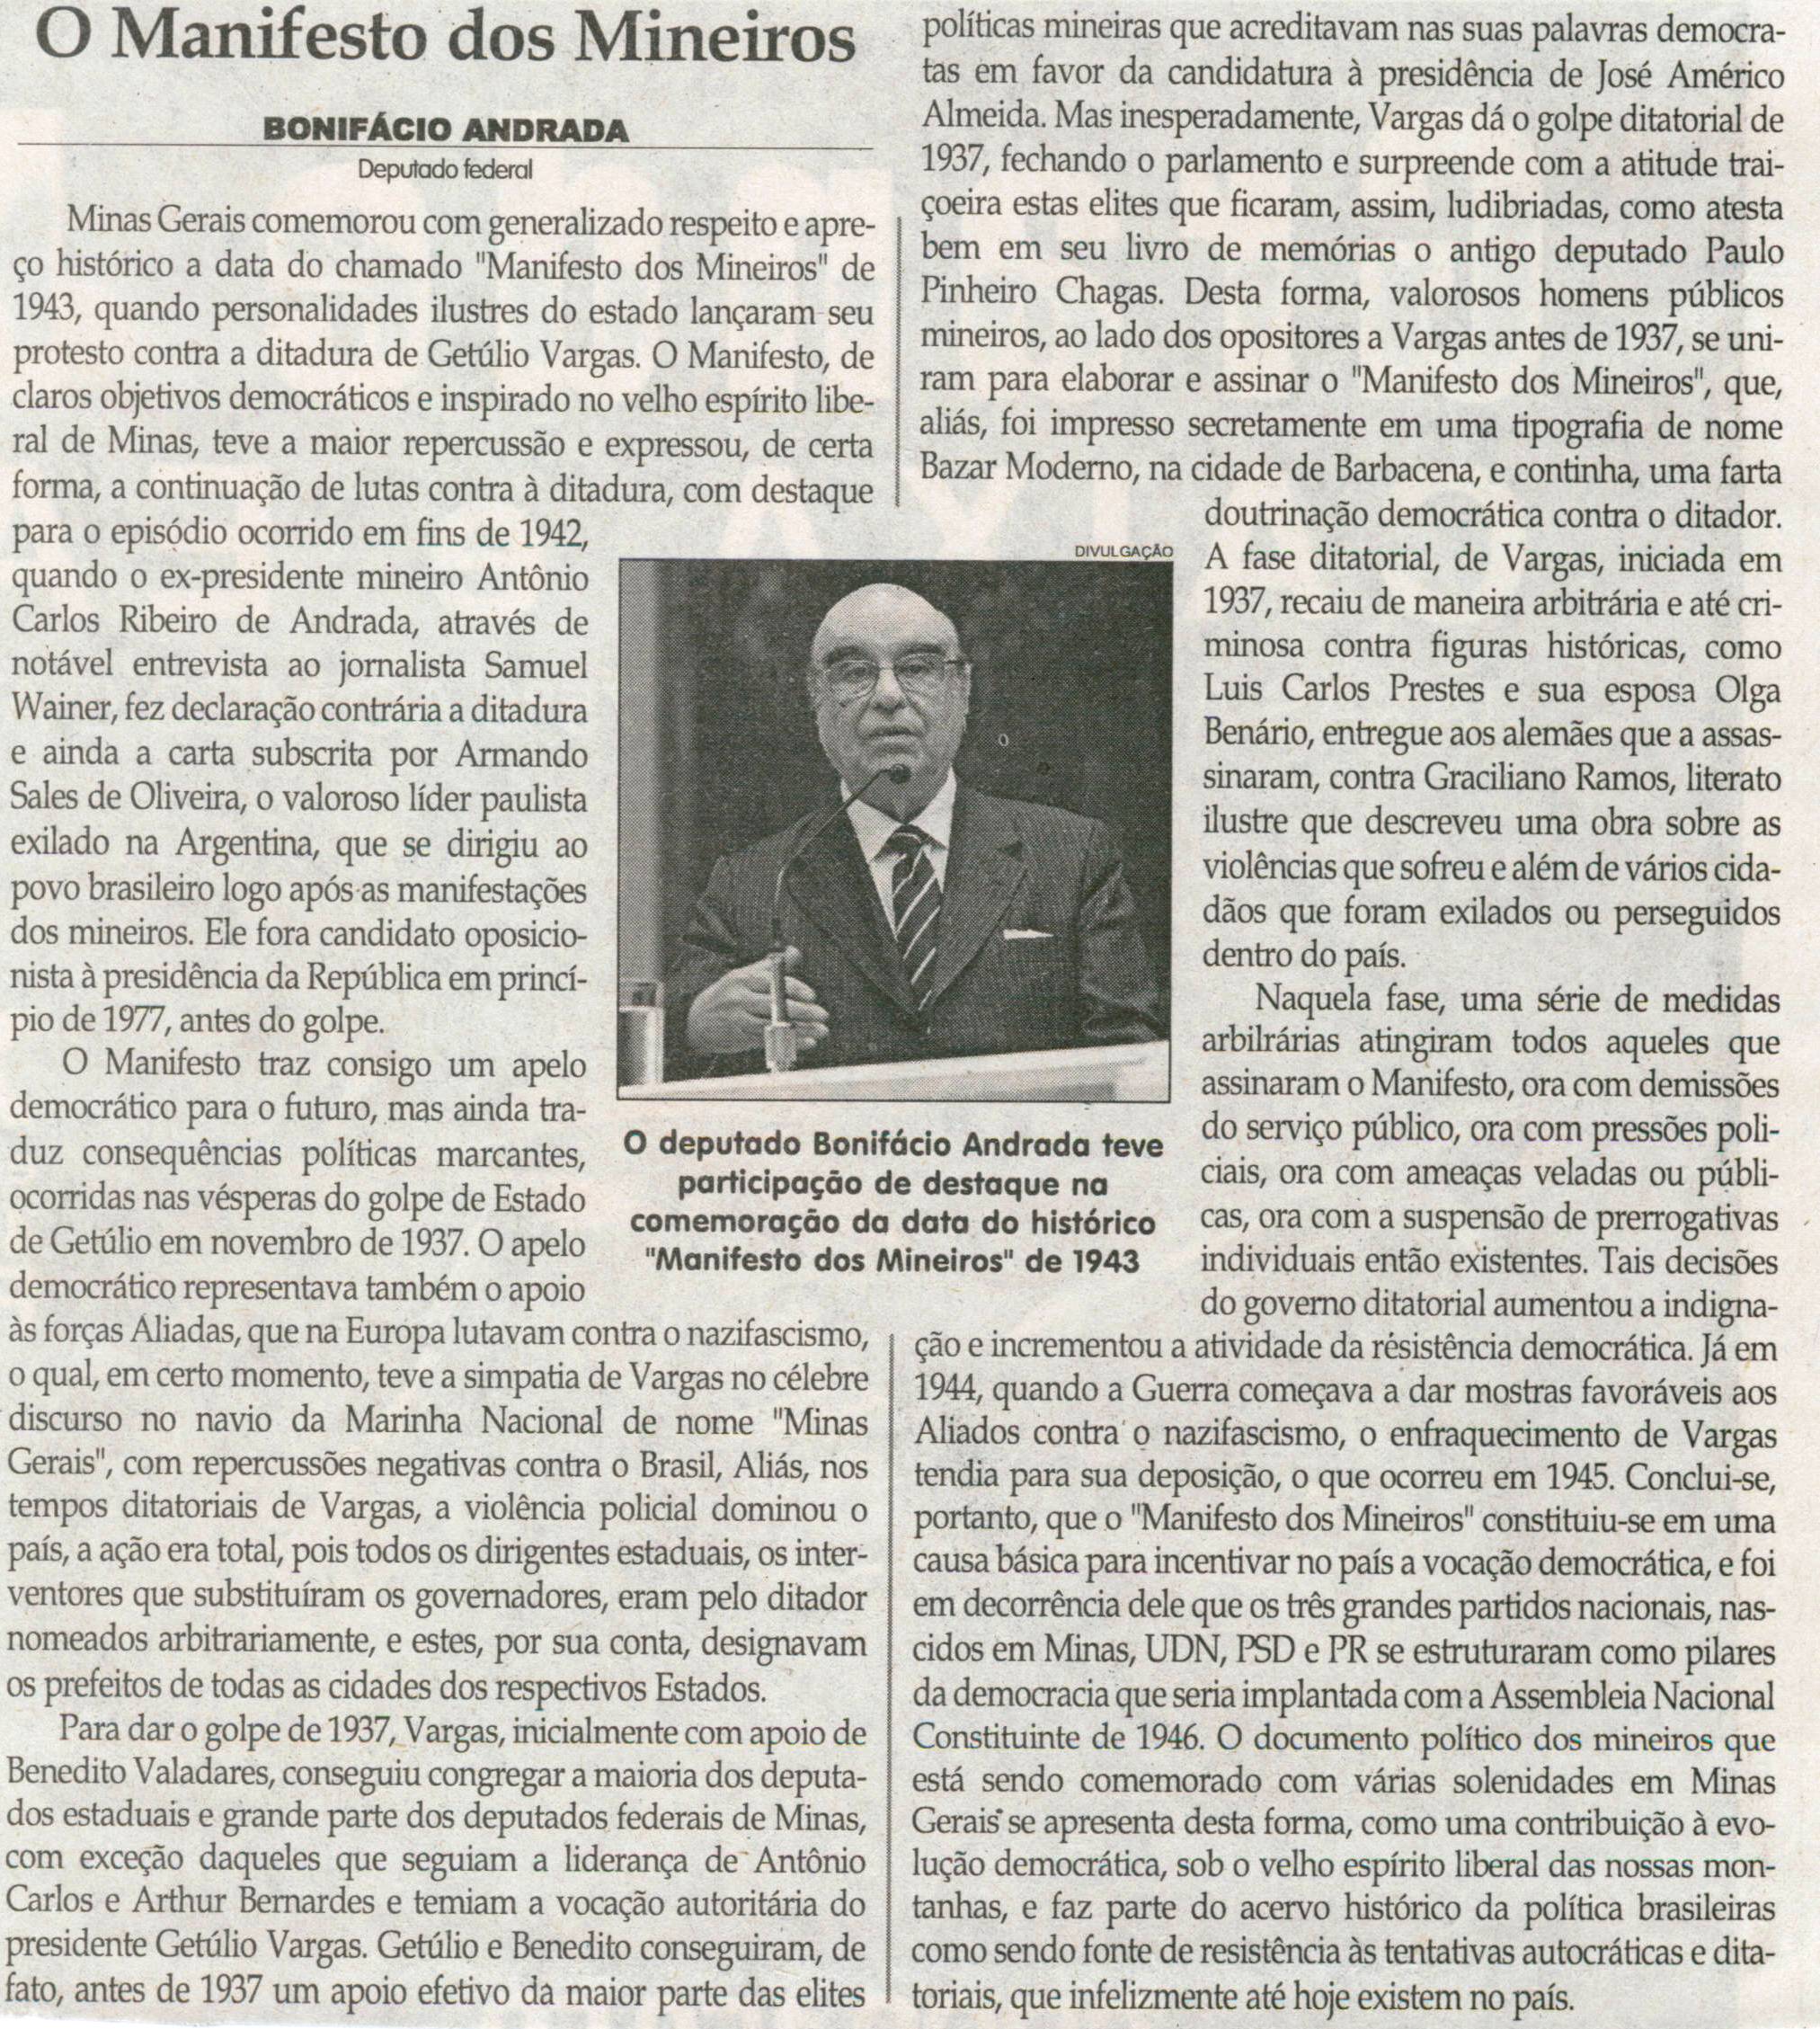 ANDRADA, Bonifácio. O manifesto dos Mineiros. Jornal Correio da Cidade, Conselheiro Lafaiete, 23 nov. 2013, p. 4.